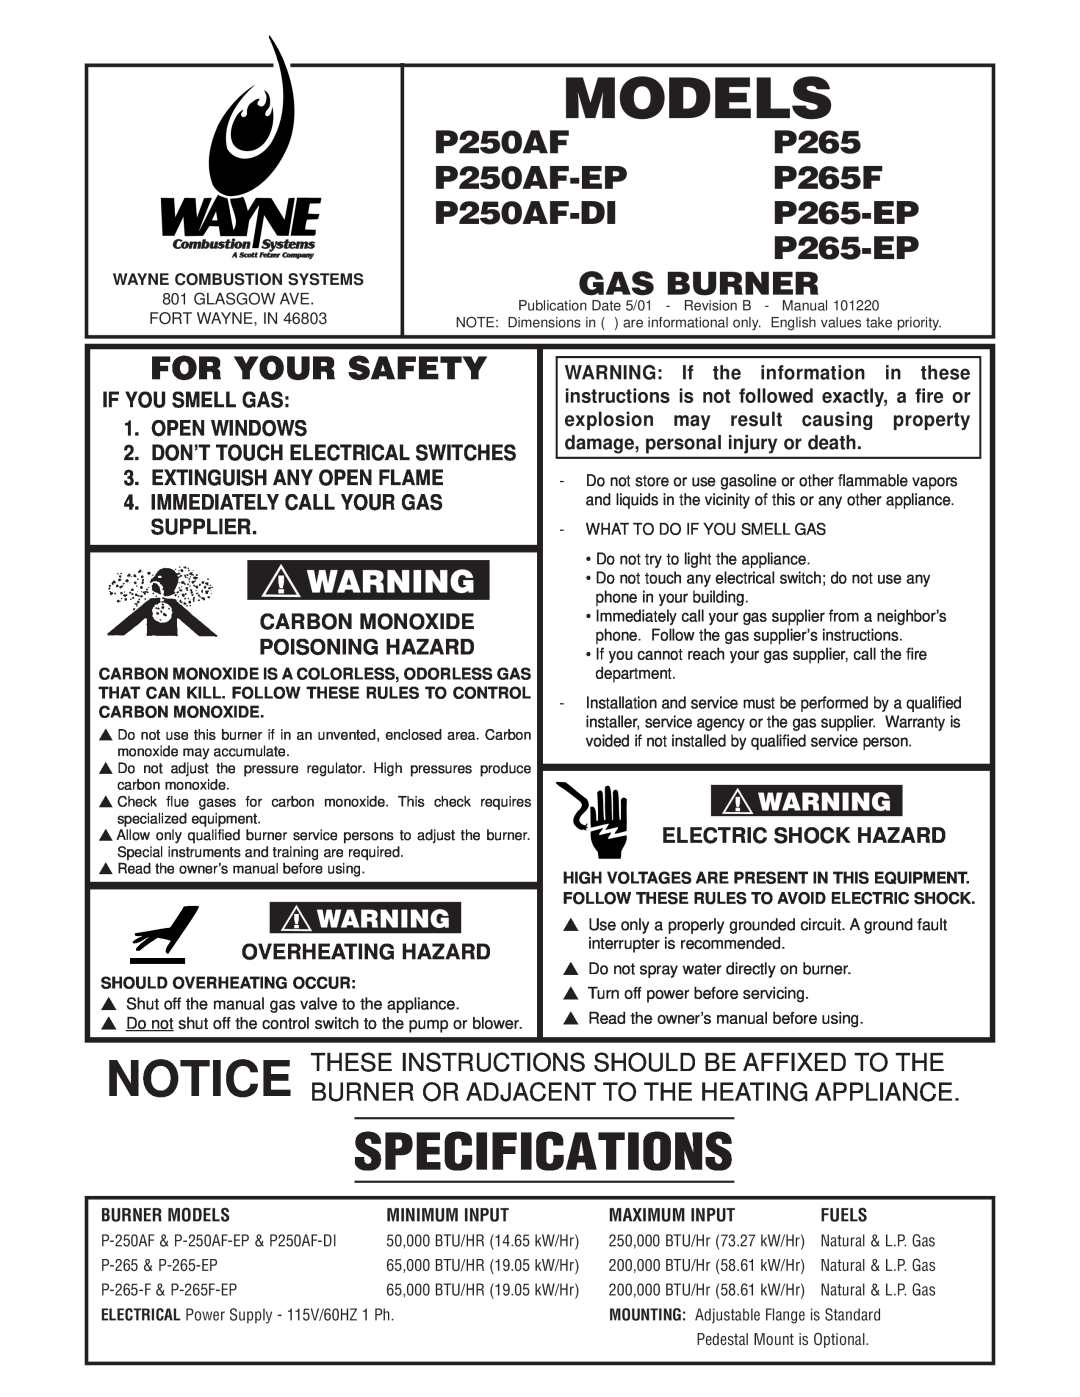 Wayne specifications P250AFP265 P250AF-EPP265F, P250AF-DI P265-EP P265-EP GAS BURNER, For Your Safety, Models 